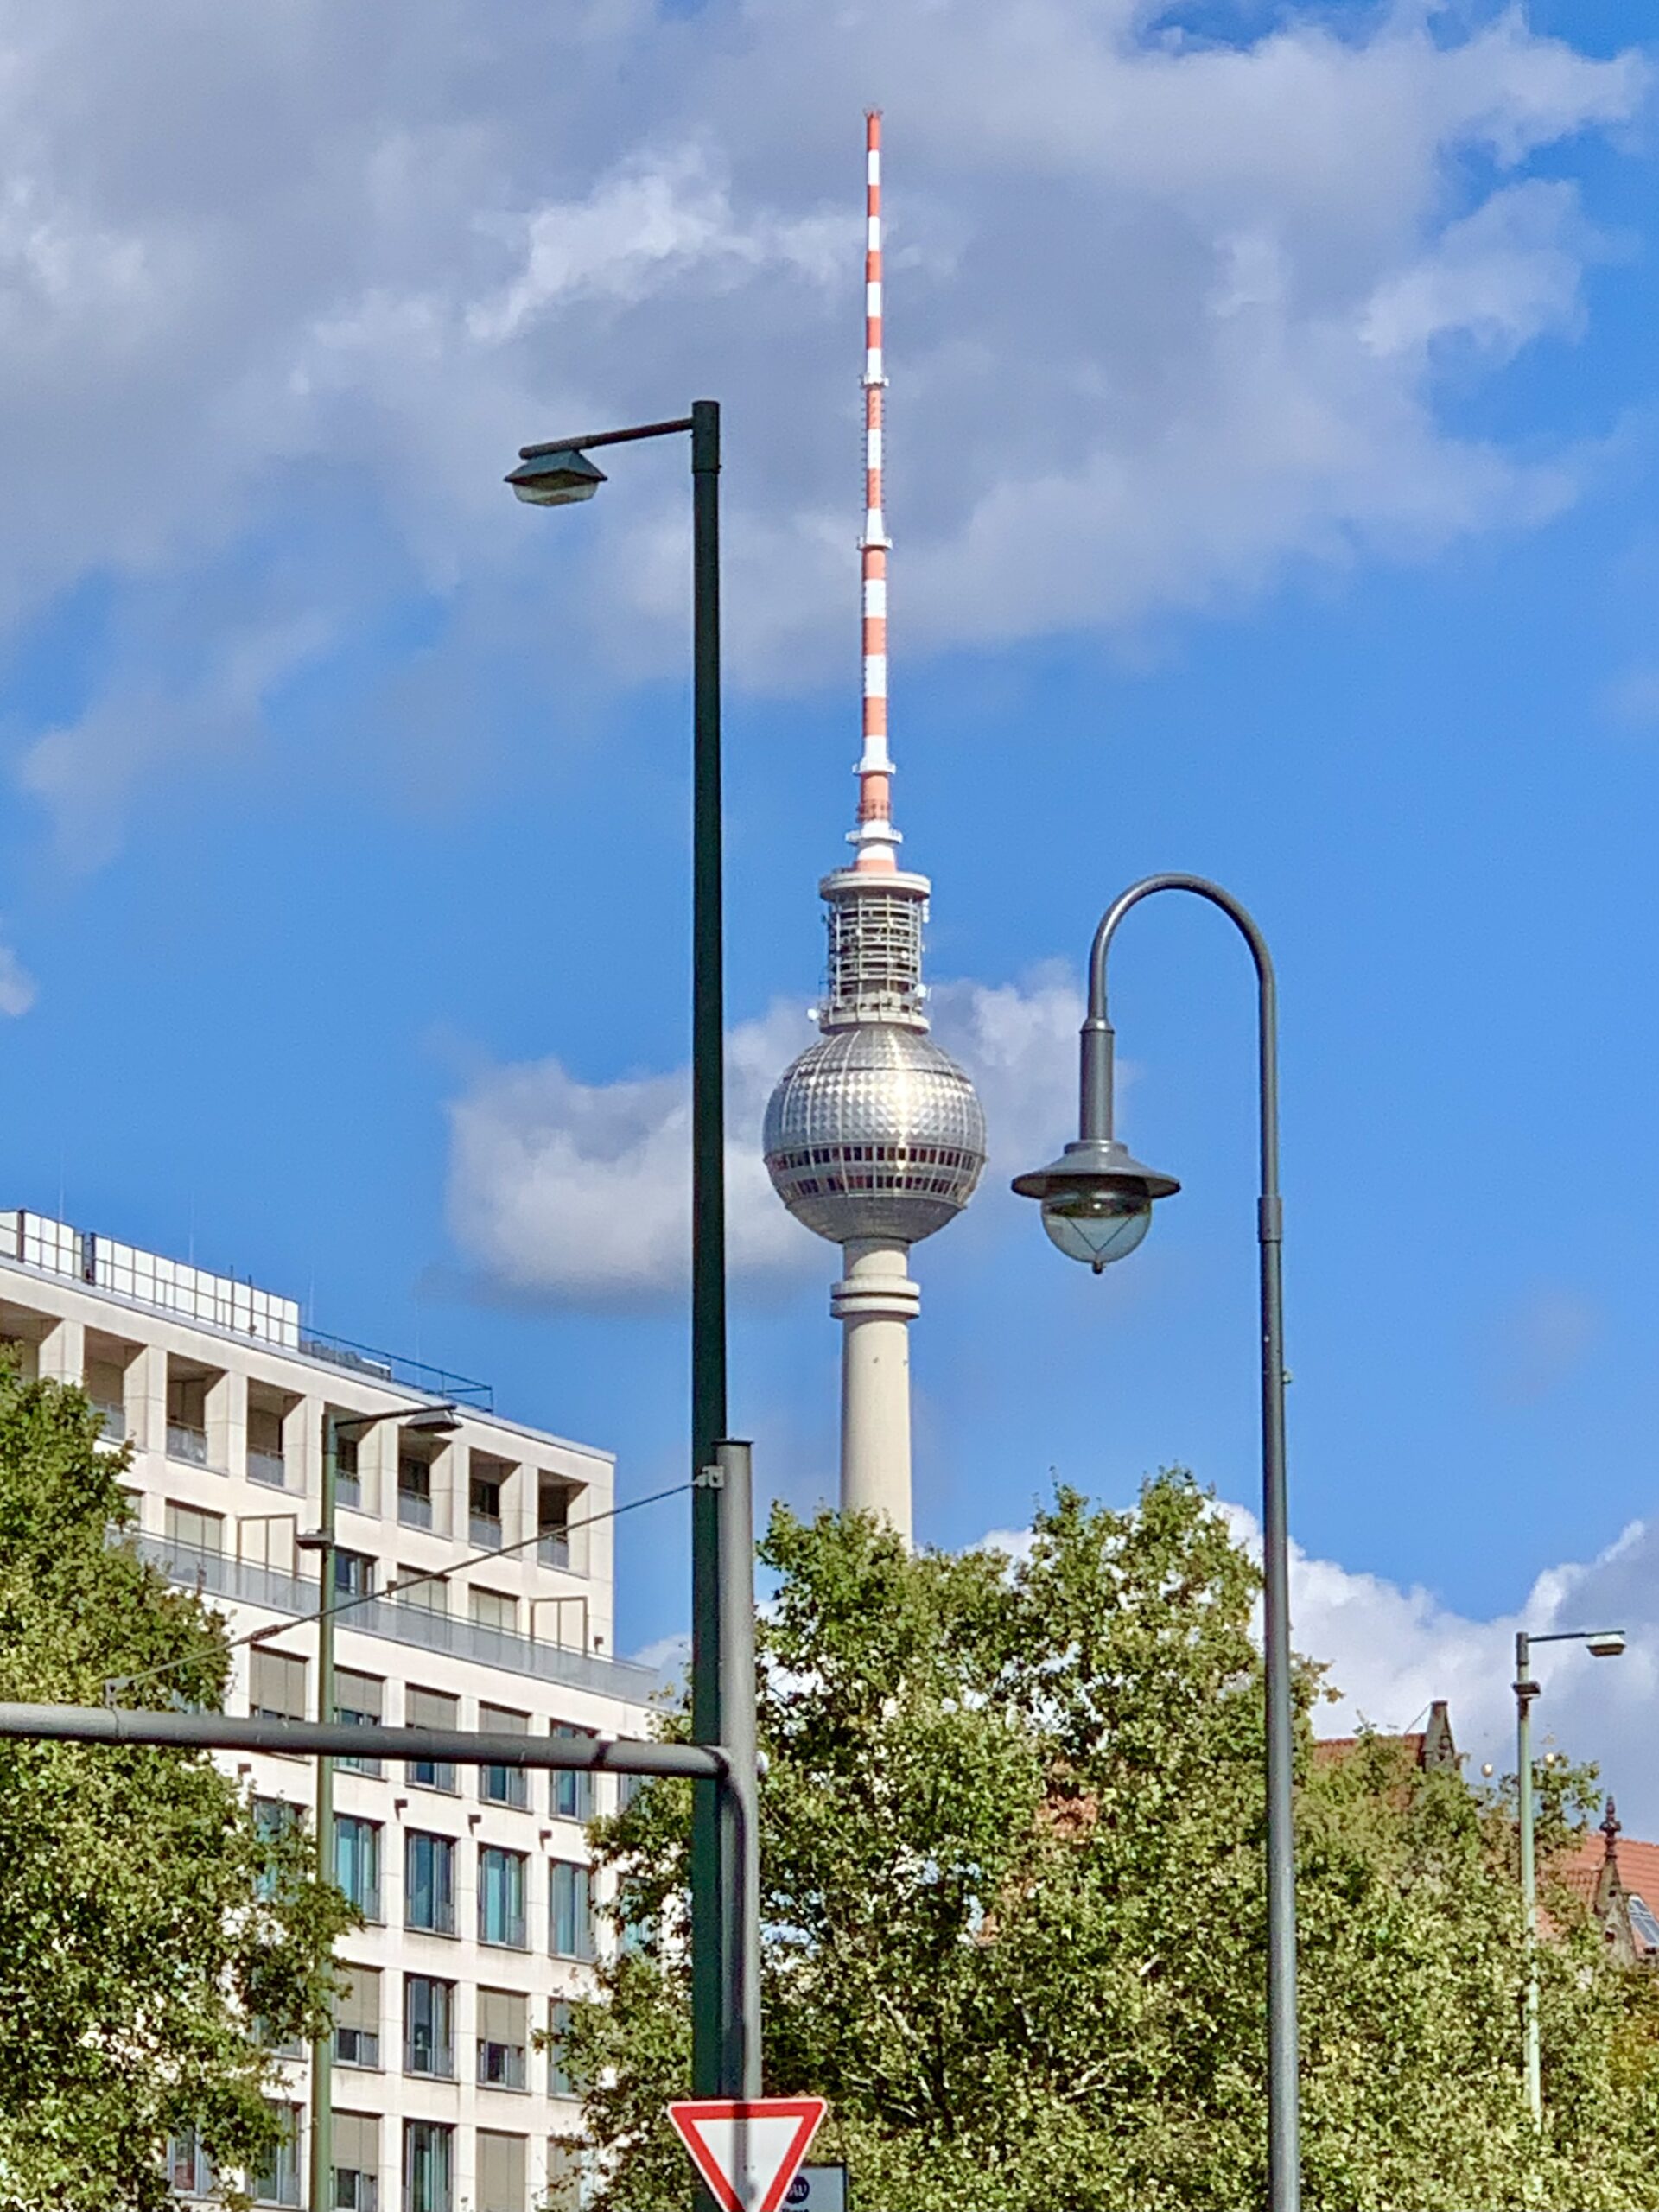 Landeseigene Wohnungsbaugesellschaften in Berlin bauen nur 624 Wohnungen